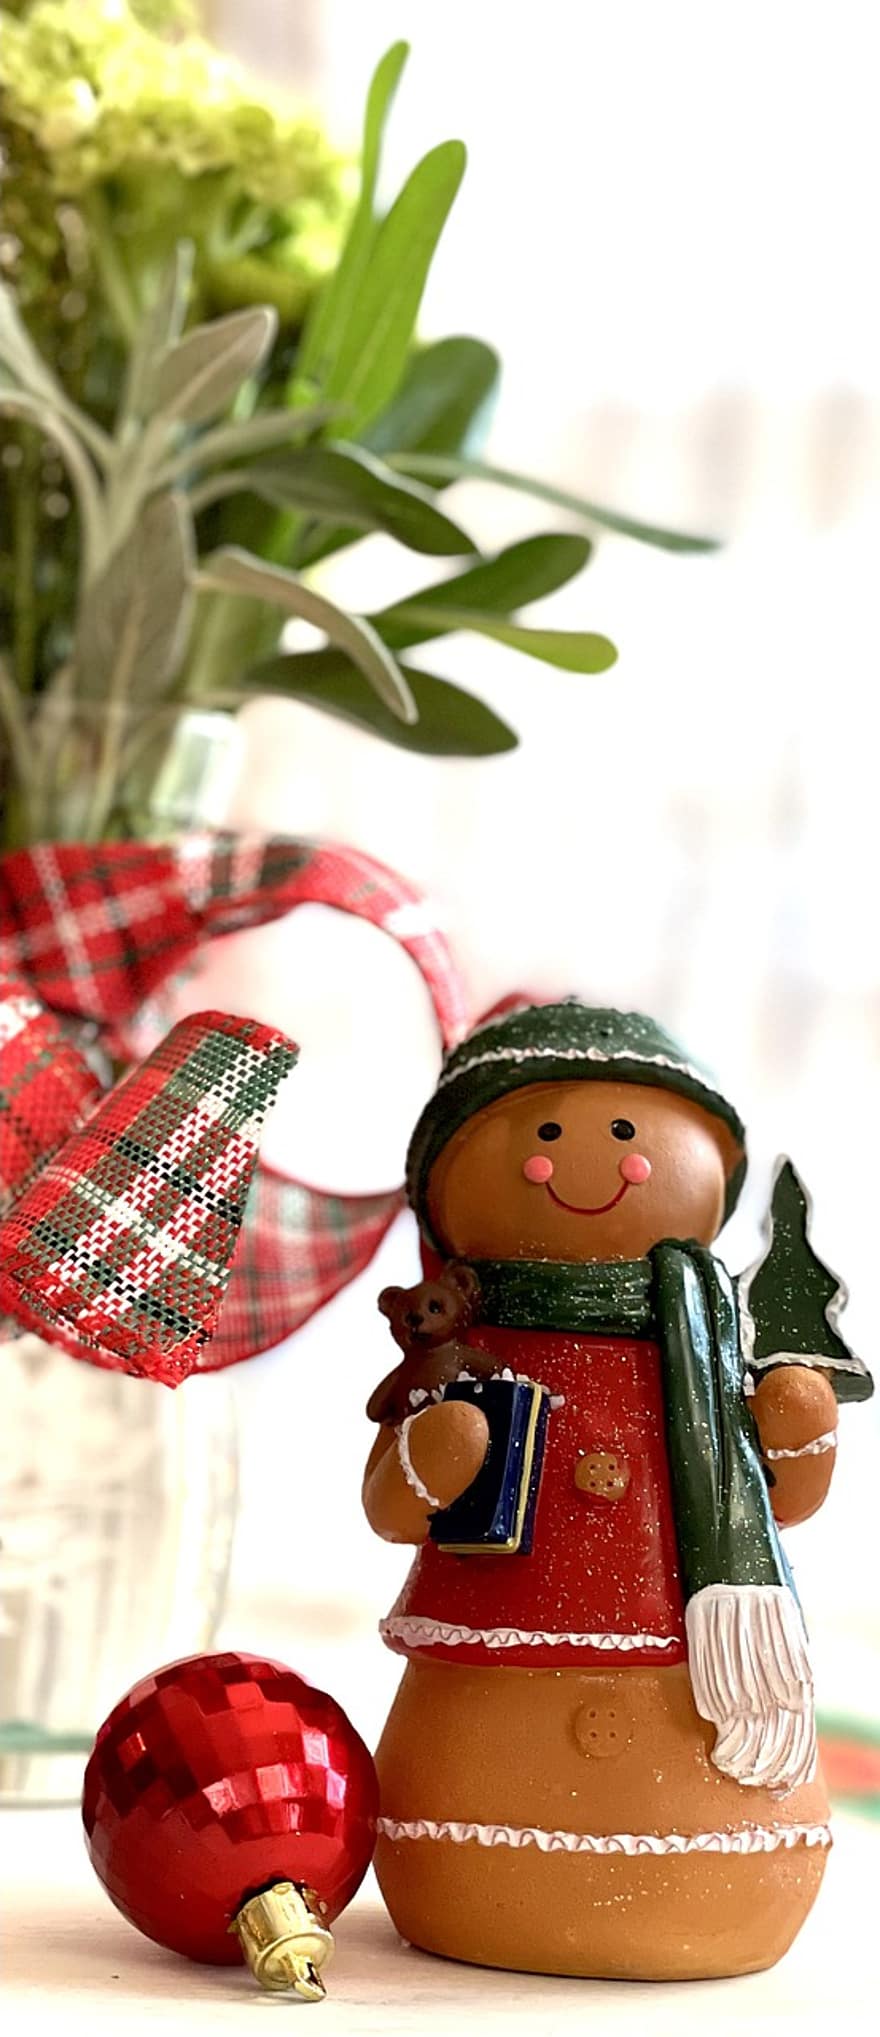 クリスマス、ジンジャーブレッド、デコレーション、休日、シーズン、冬、お祝い、贈り物、きらきら、クリスマスの飾り、雪だるま